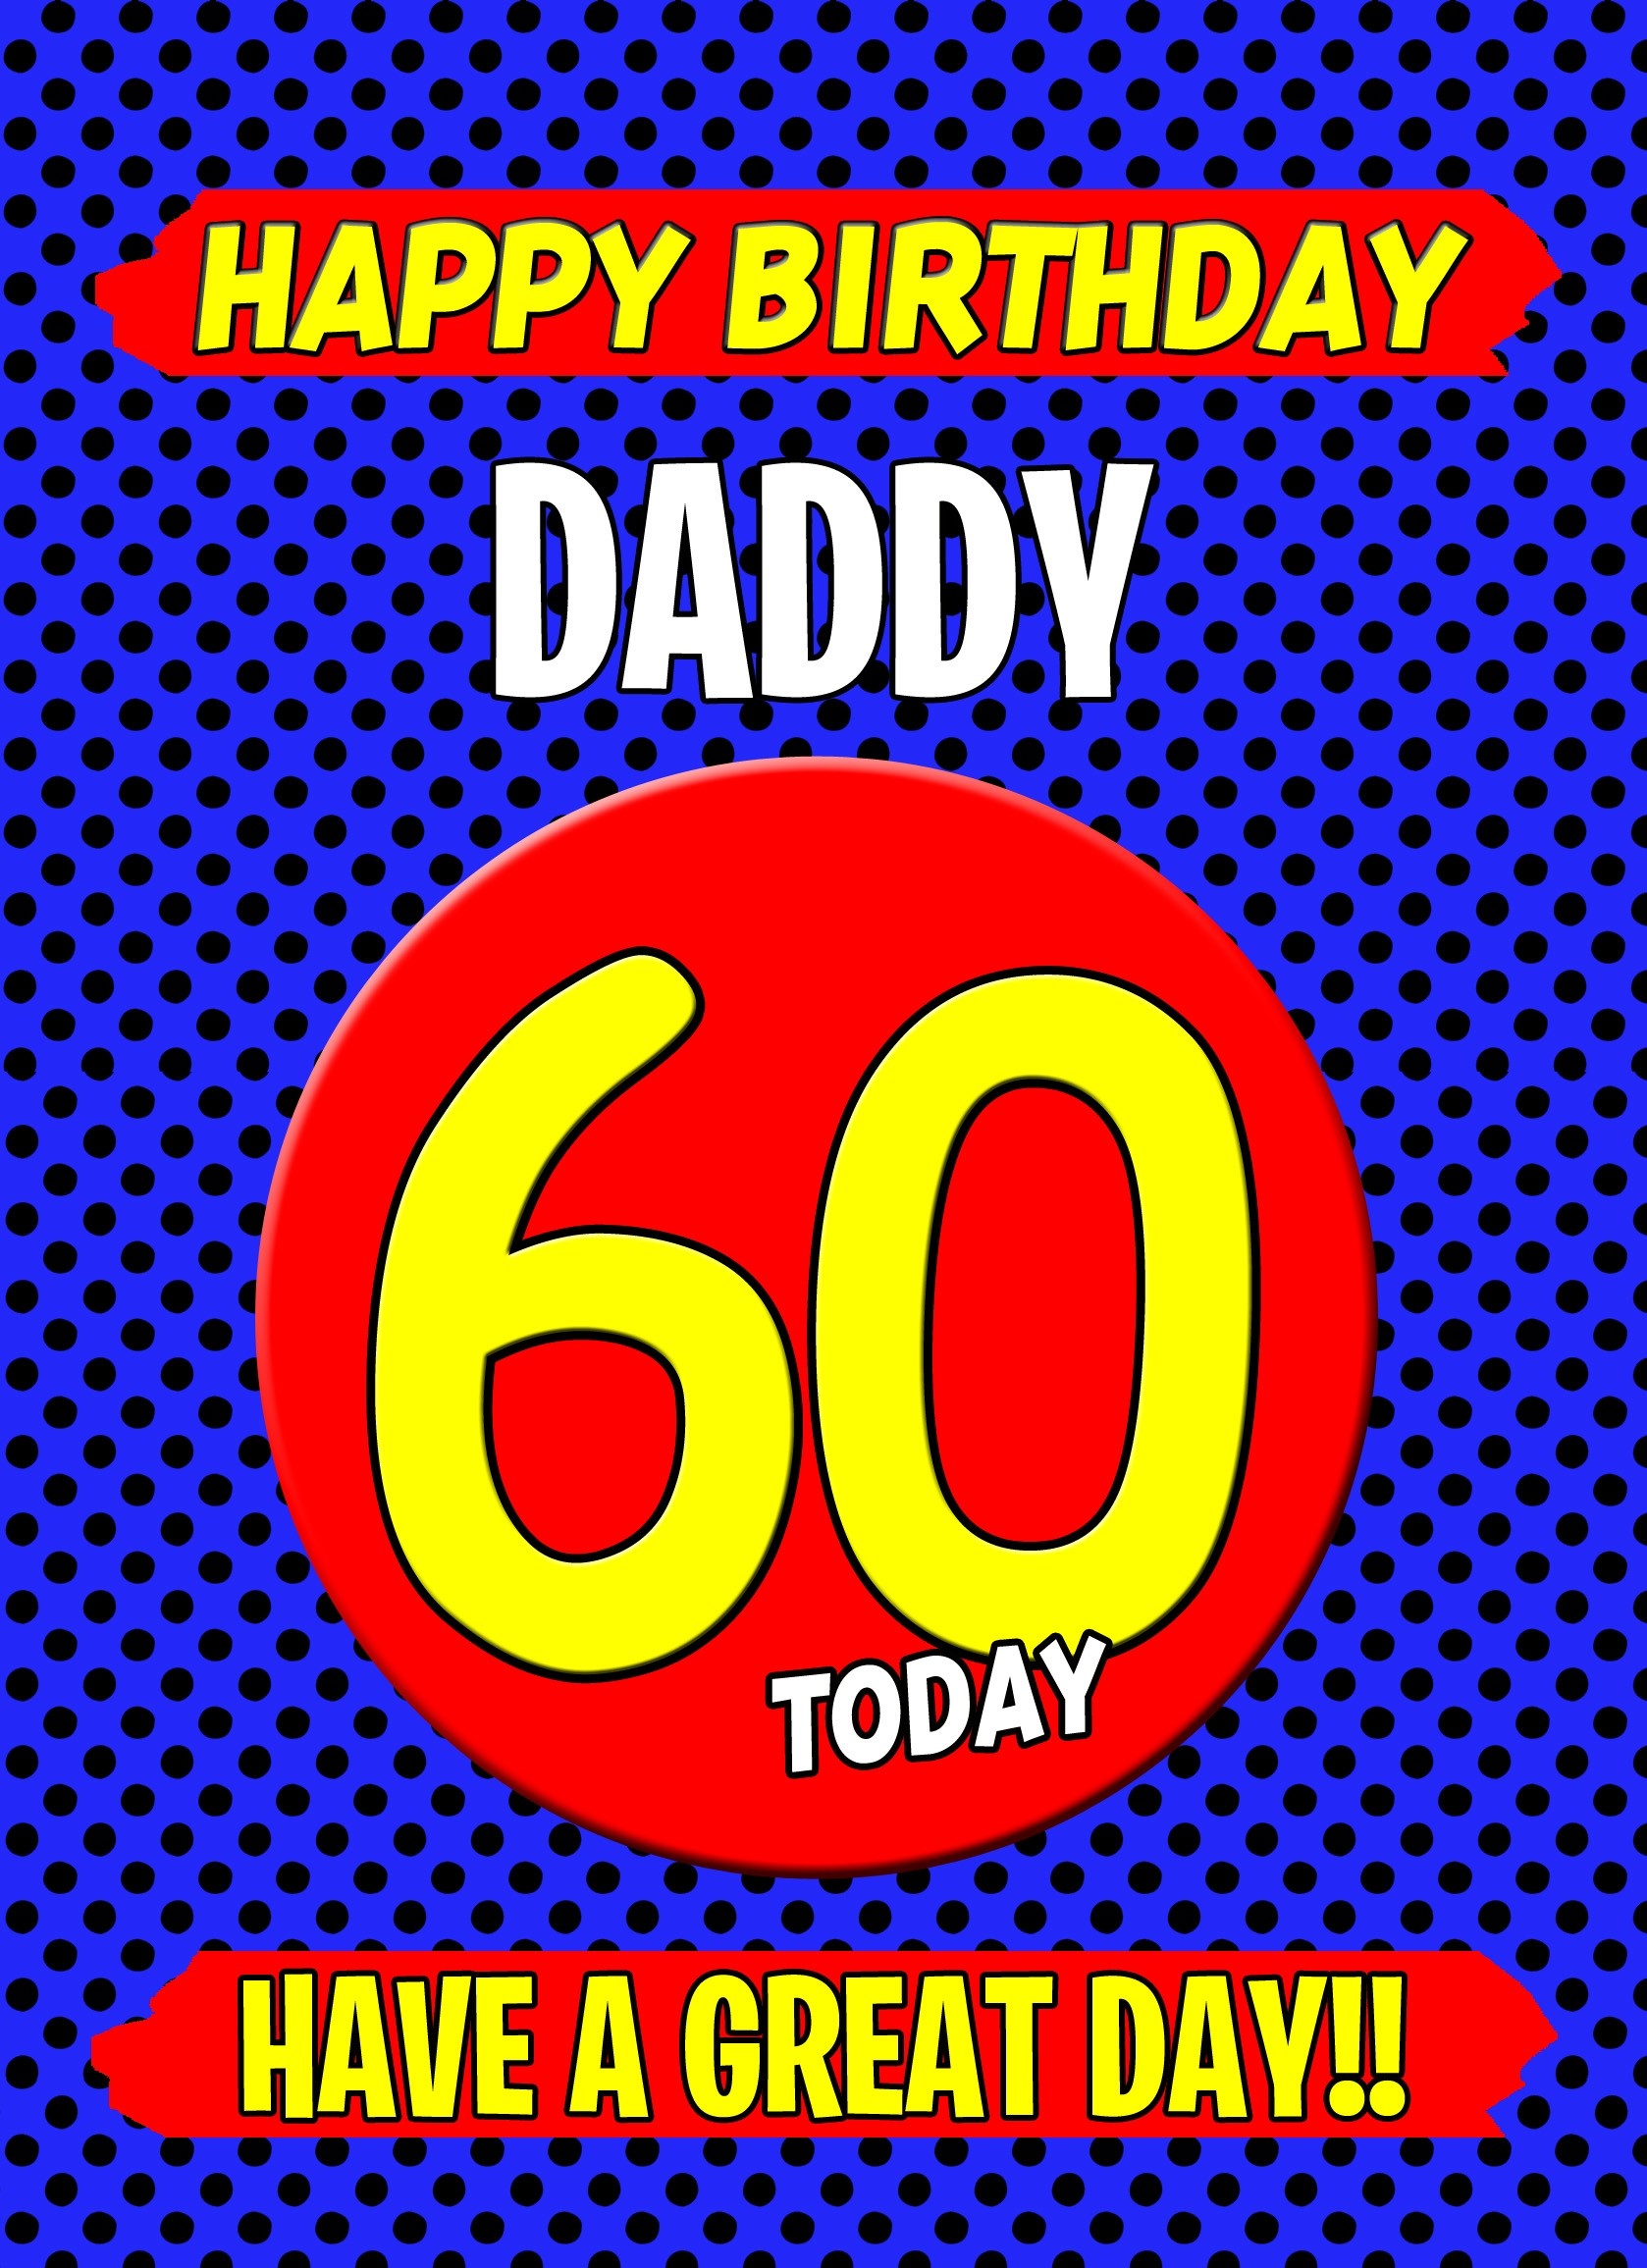 Daddy 60th Birthday Card (Blue)